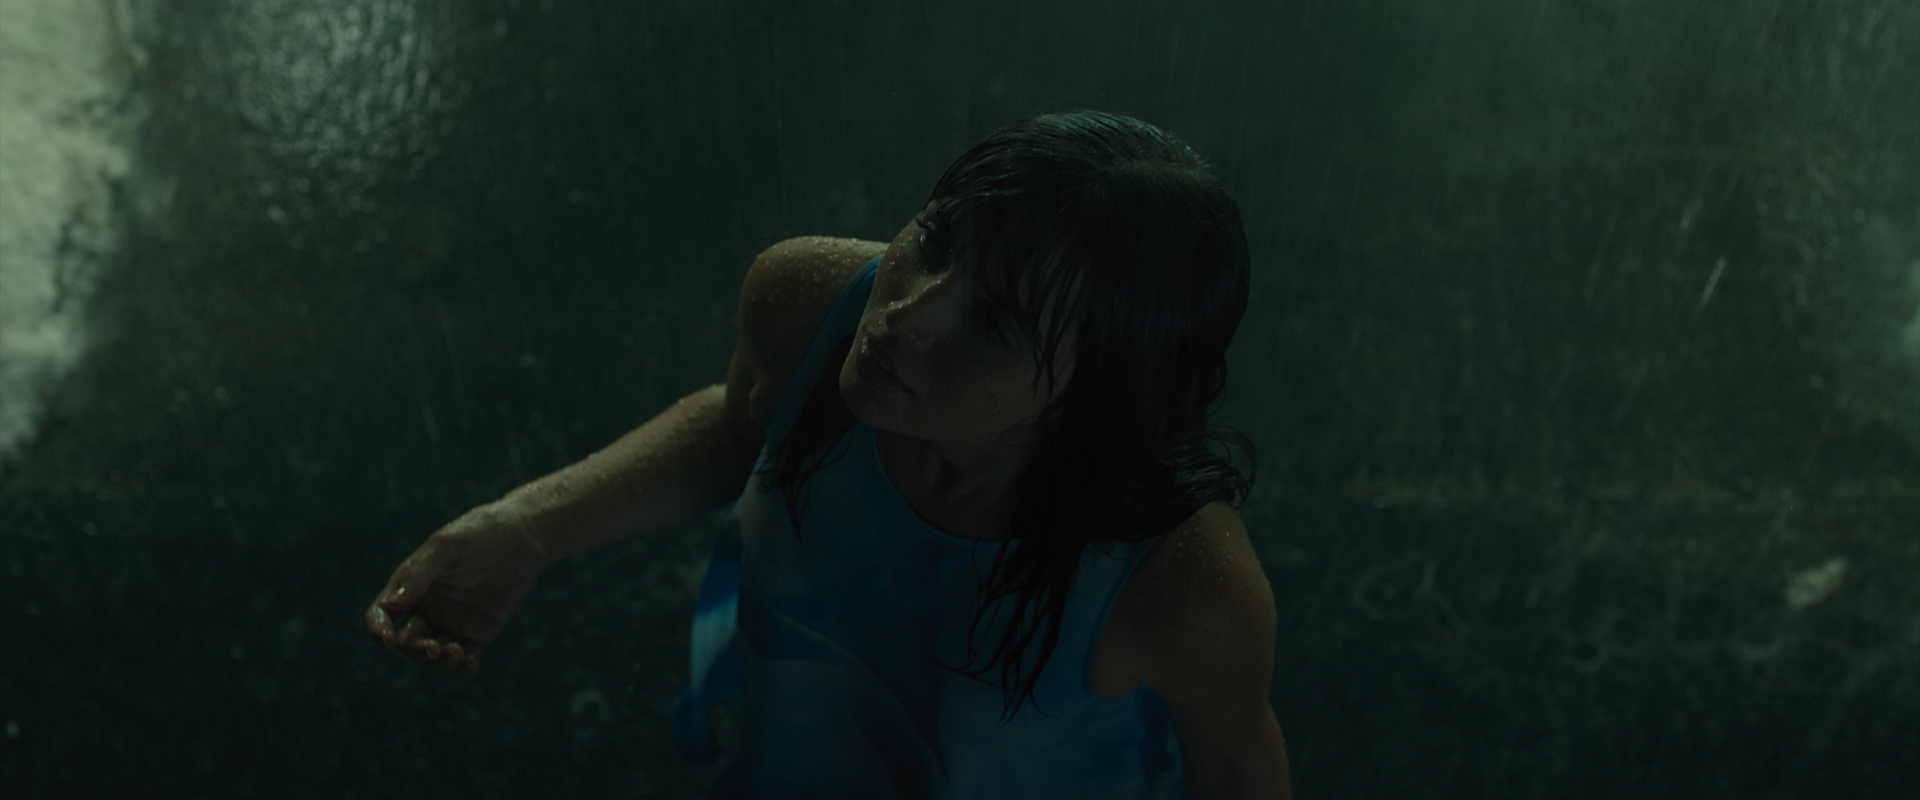 People 1920x800 Ana de Armas women actress Blade Runner 2049 Blade Runner film stills cuban rain wet body